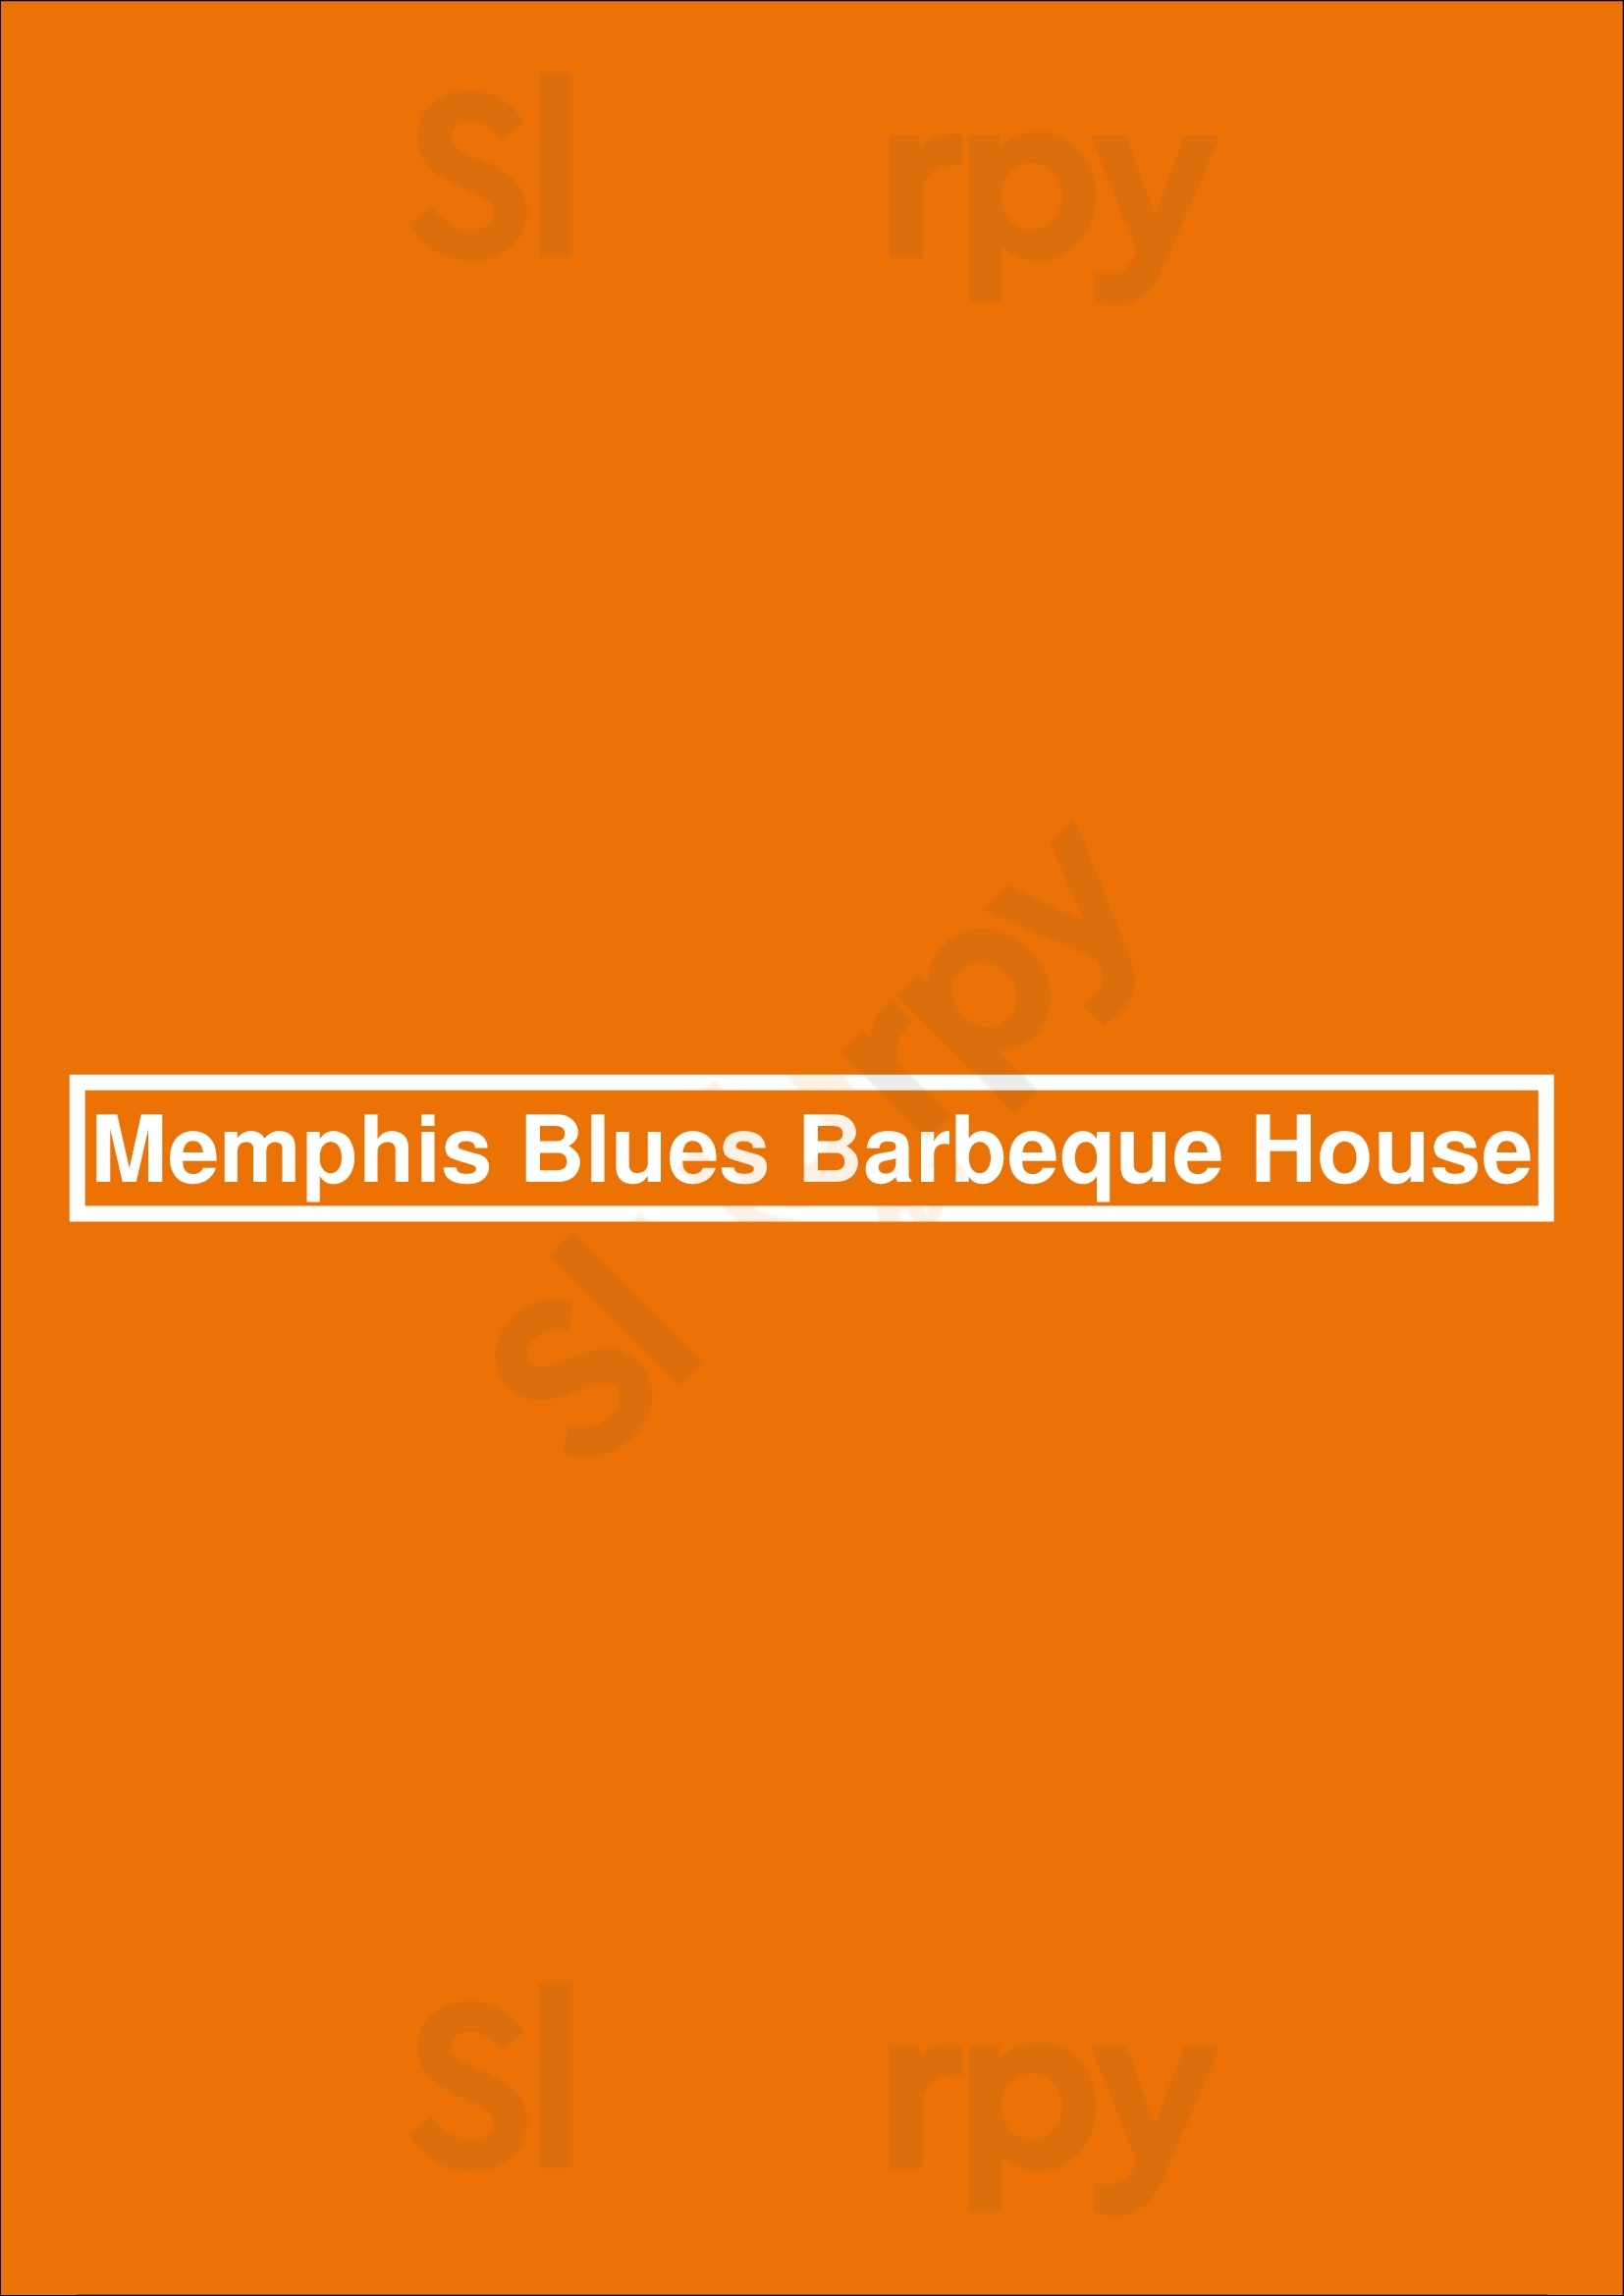 Memphis Blues Barbeque House Vancouver Menu - 1